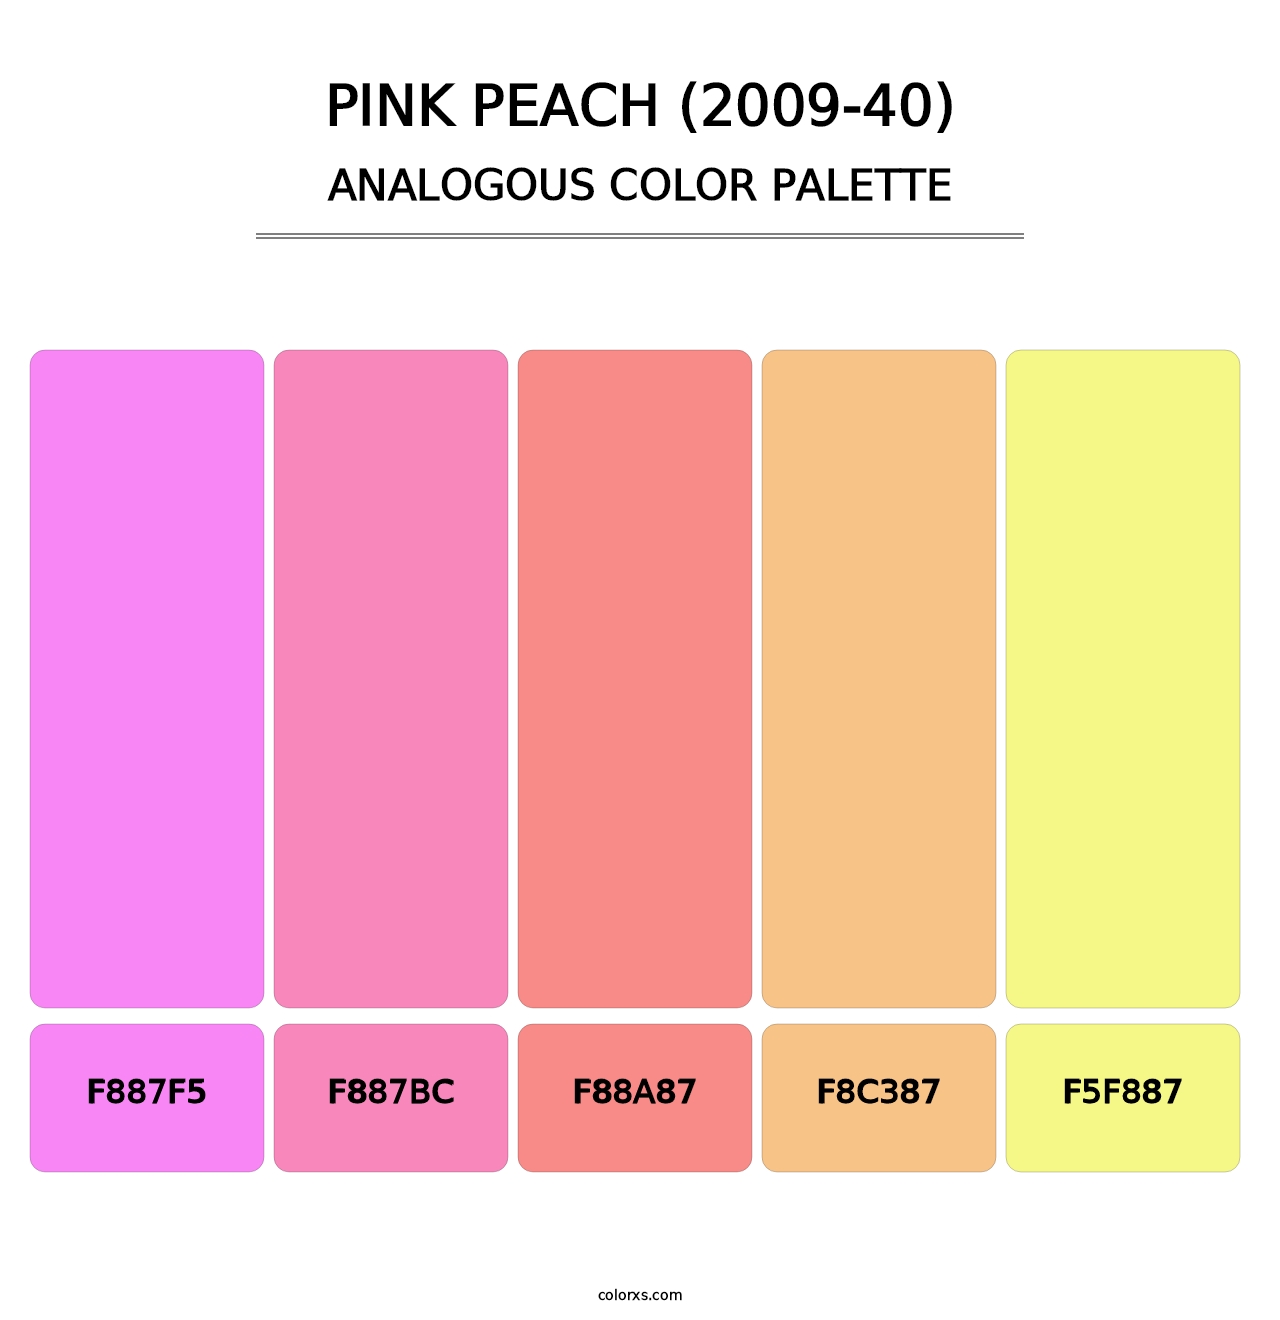 Pink Peach (2009-40) - Analogous Color Palette